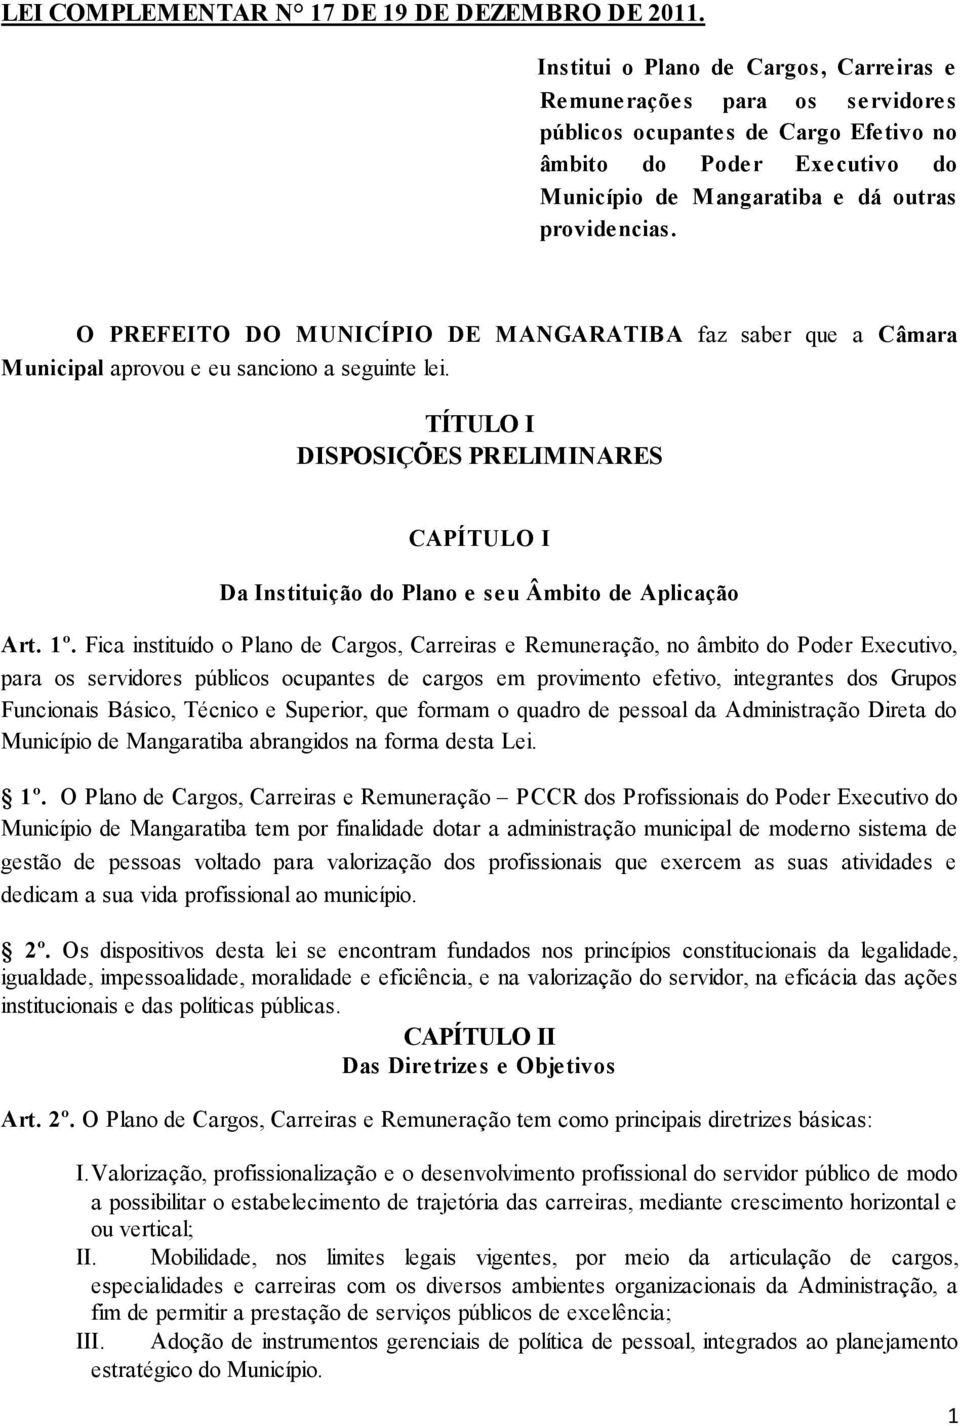 O PREFEITO DO MUNICÍPIO DE MANGARATIBA faz saber que a Câmara Municipal aprovou e eu sanciono a seguinte lei.